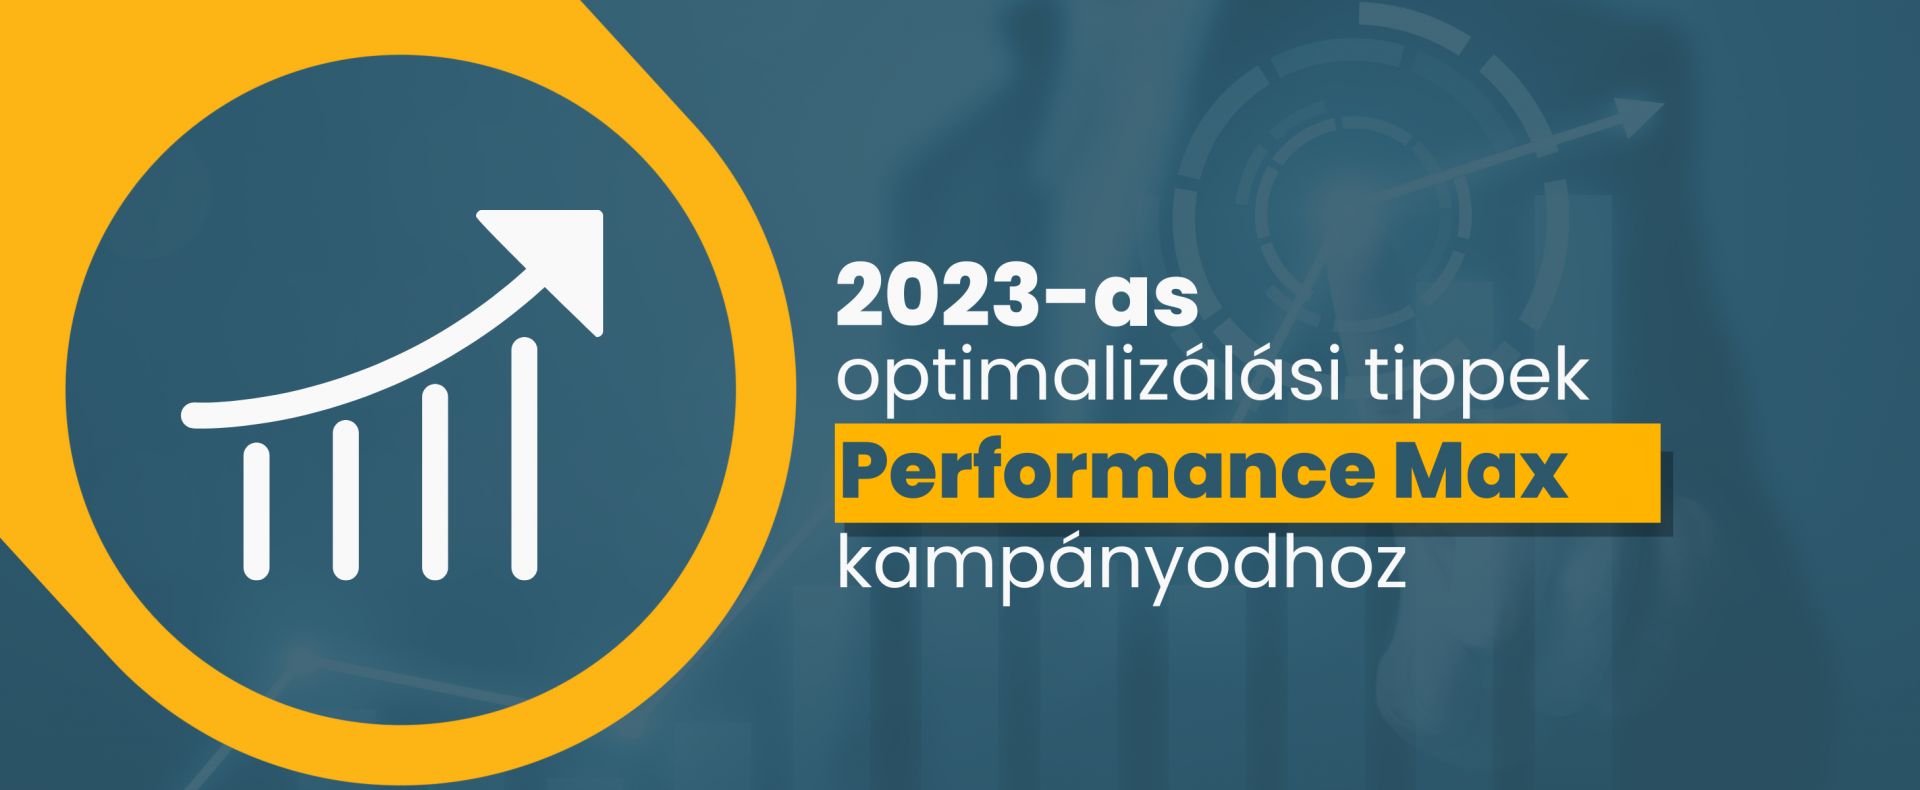 2023-as optimalizálási tippek a Performance Max kampányodhoz